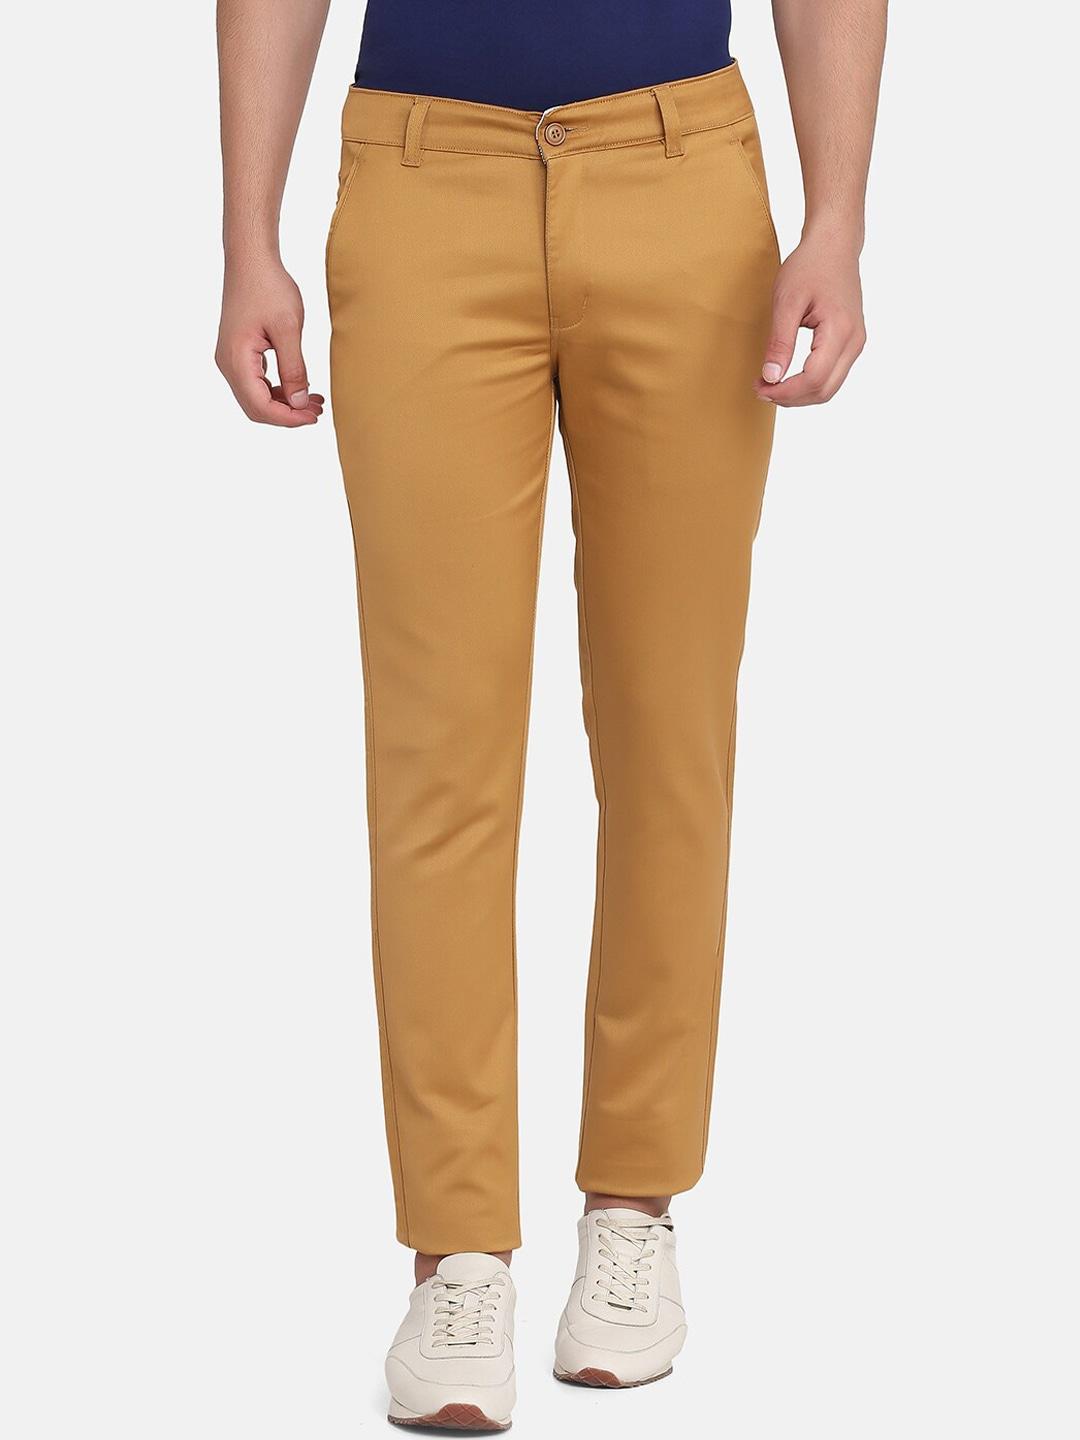 tahvo men mustard yellow comfort slim fit chinos trousers